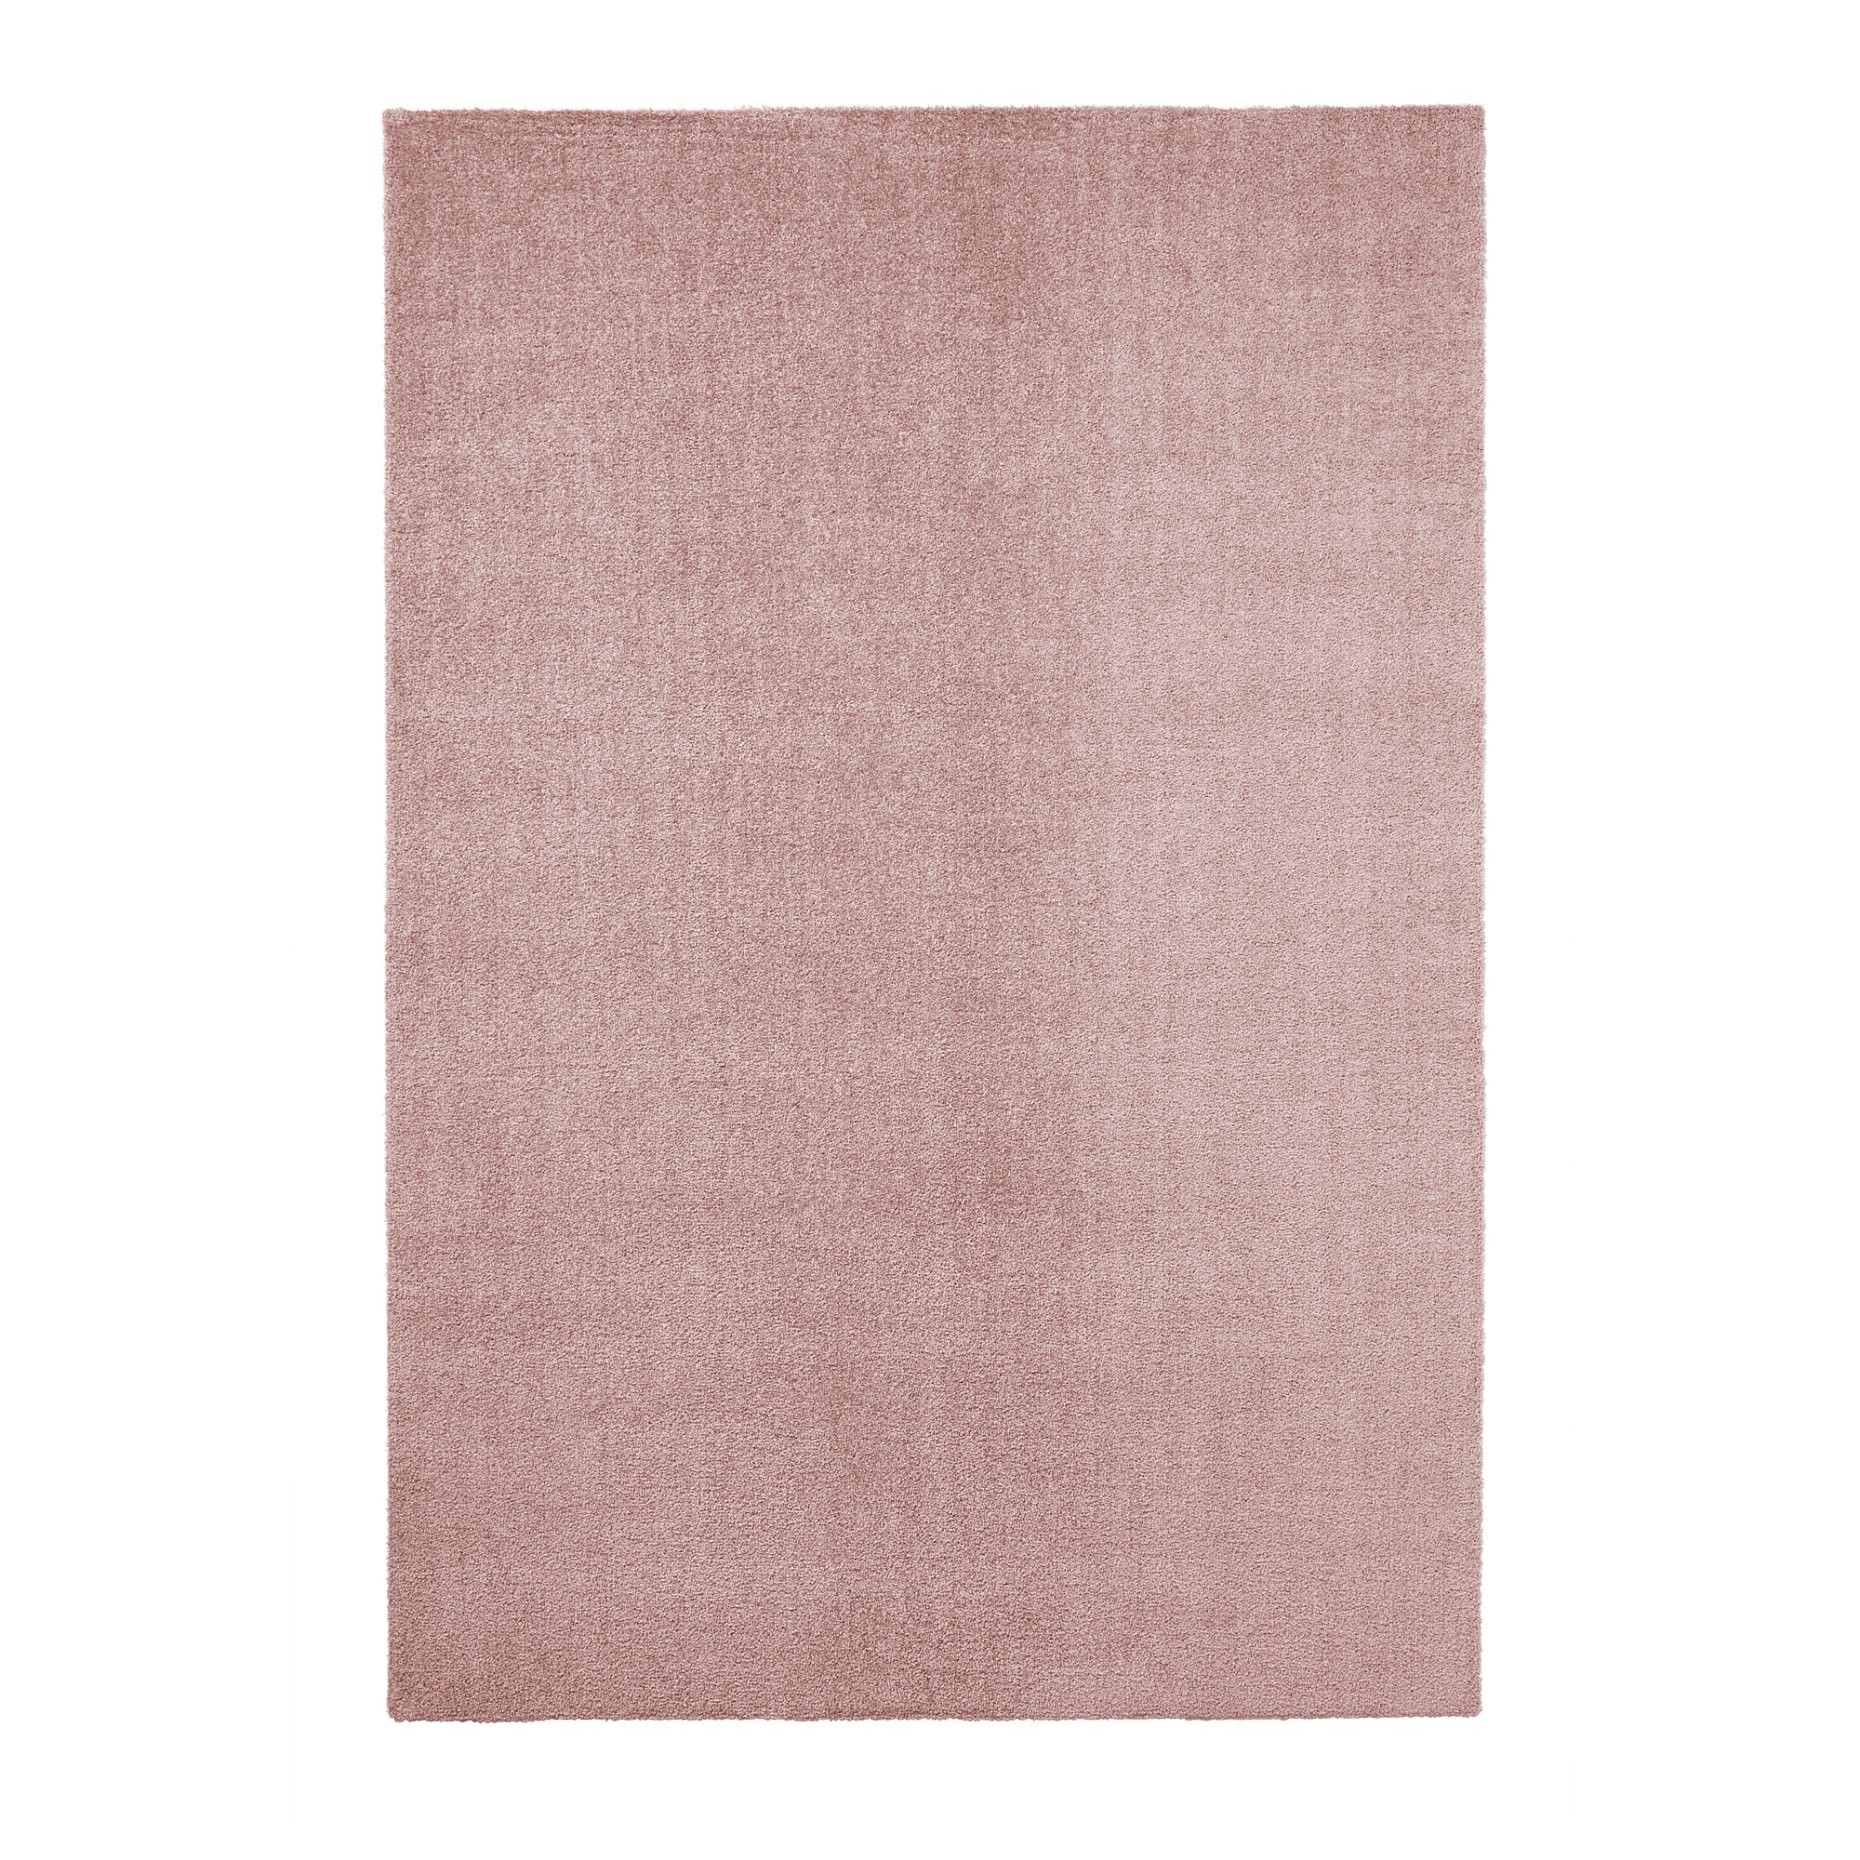 KNARDRUP, килим, къса нишка, 160x230 см, 604.926.17